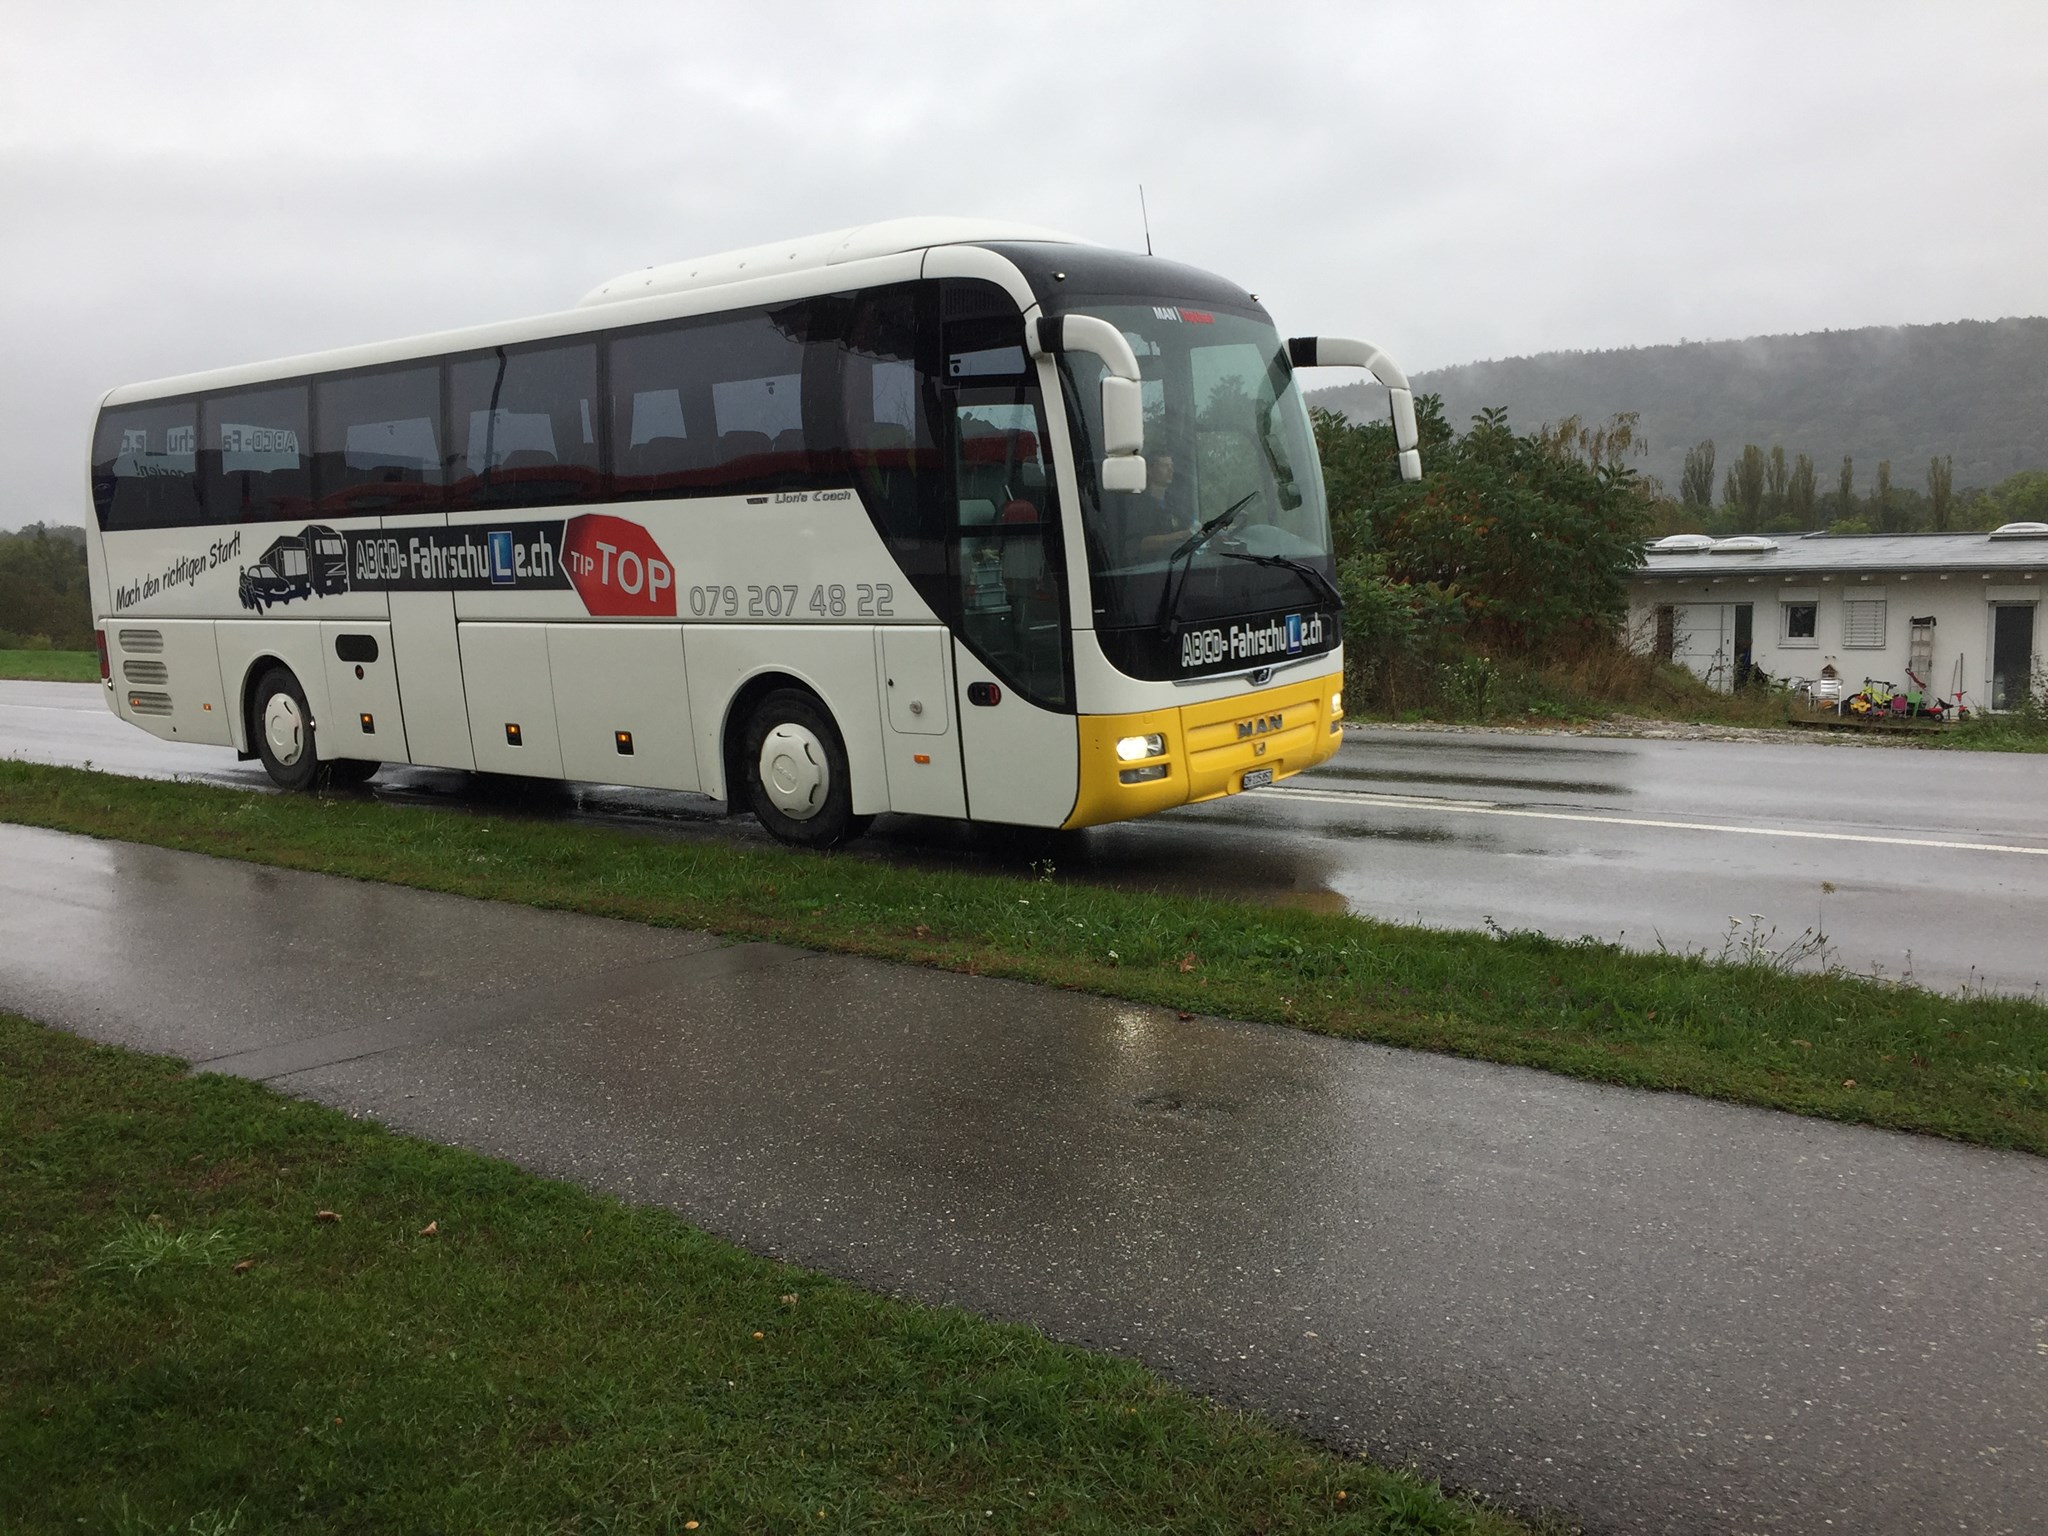  Kontrollfahrt für Reisebus Fahrschule in Winterthur ABCD Fahrschule Winterthur